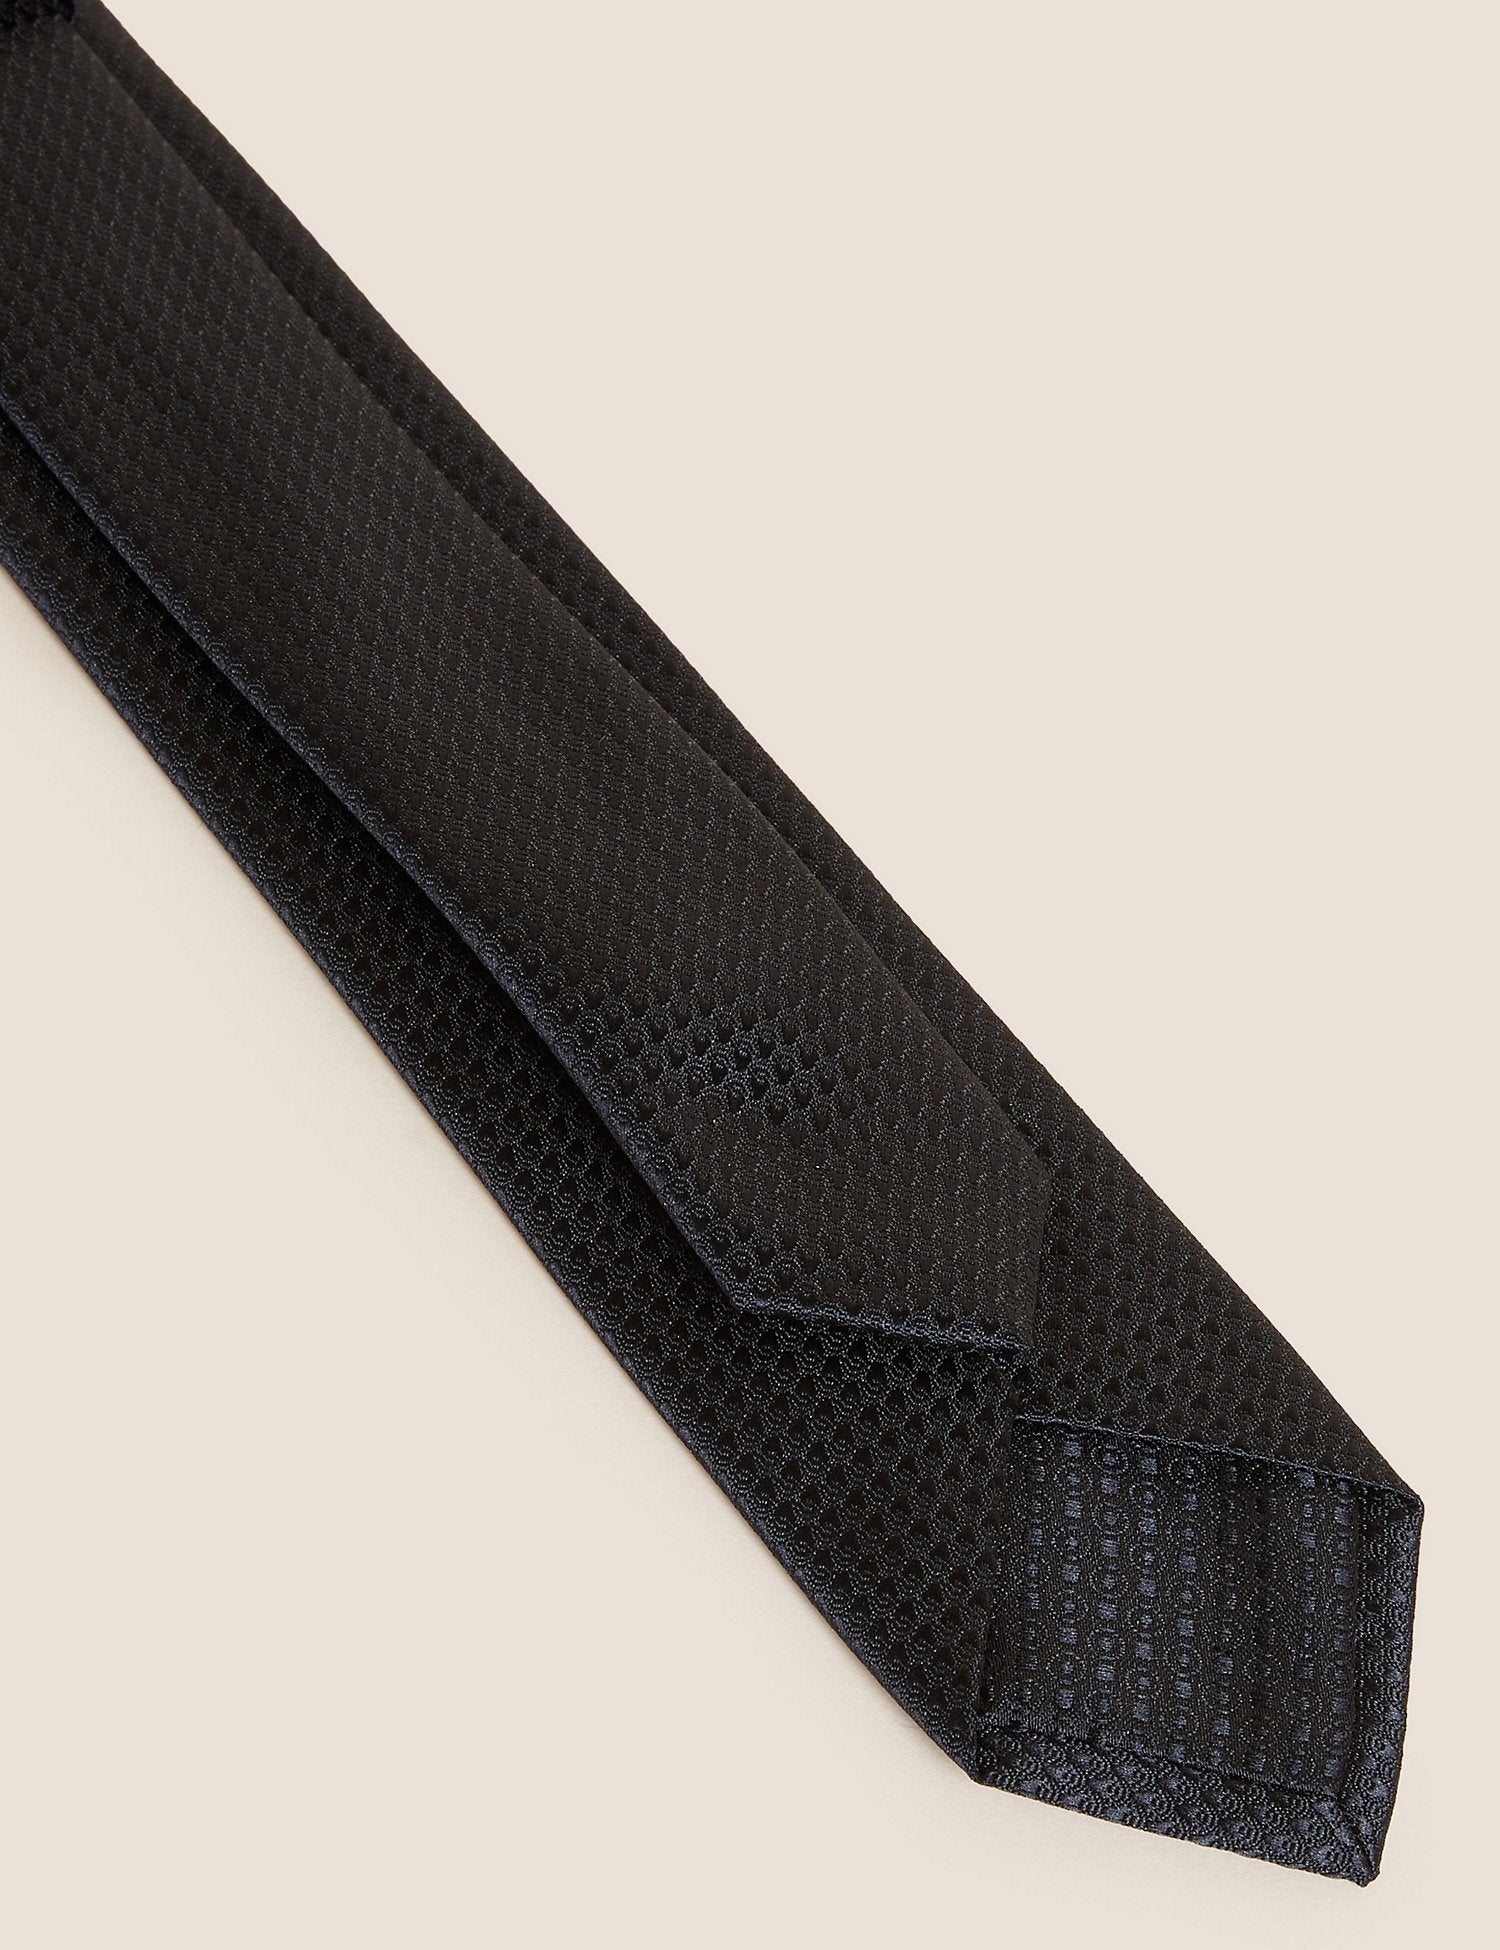 Skinny Geometric Tie